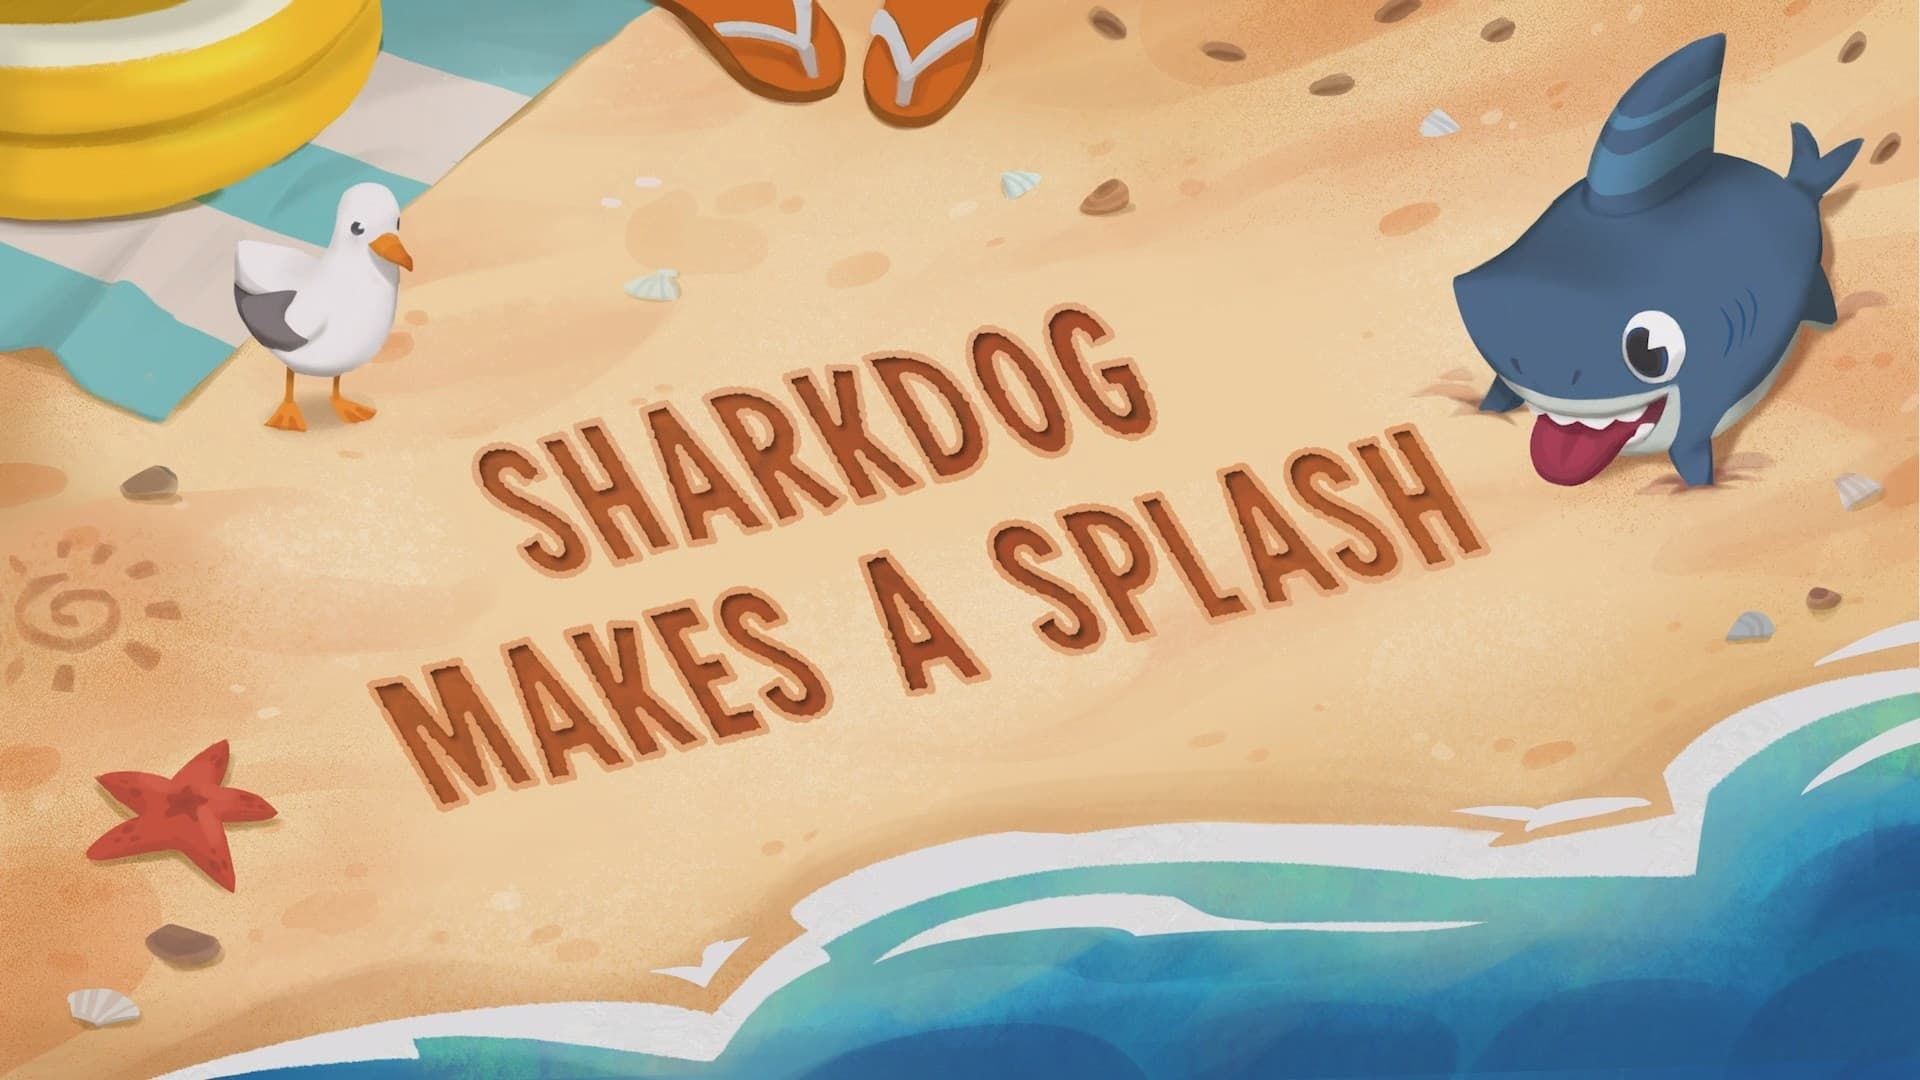 Sharkdog background